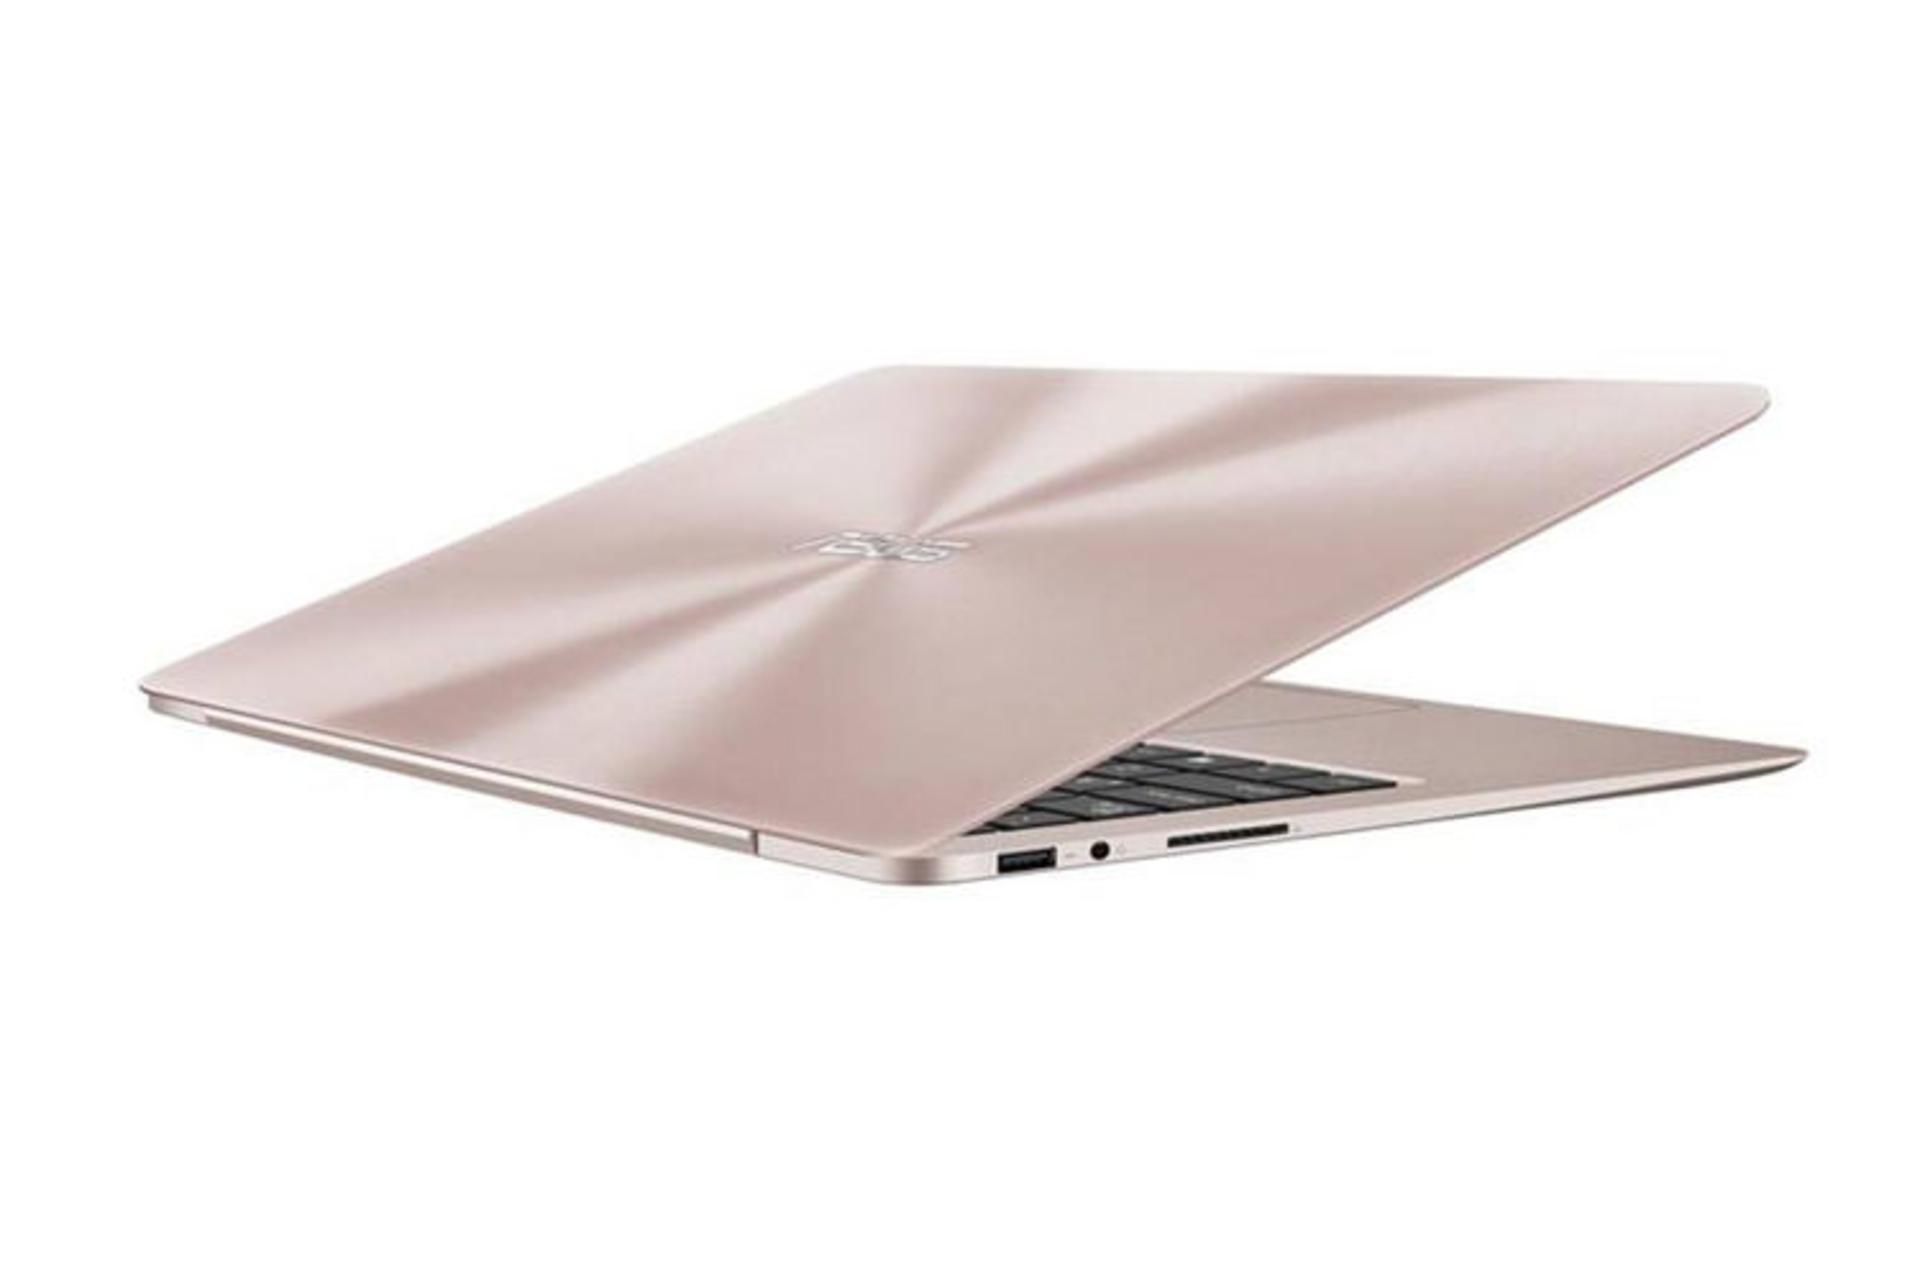 Asus ZenBook UX330UA